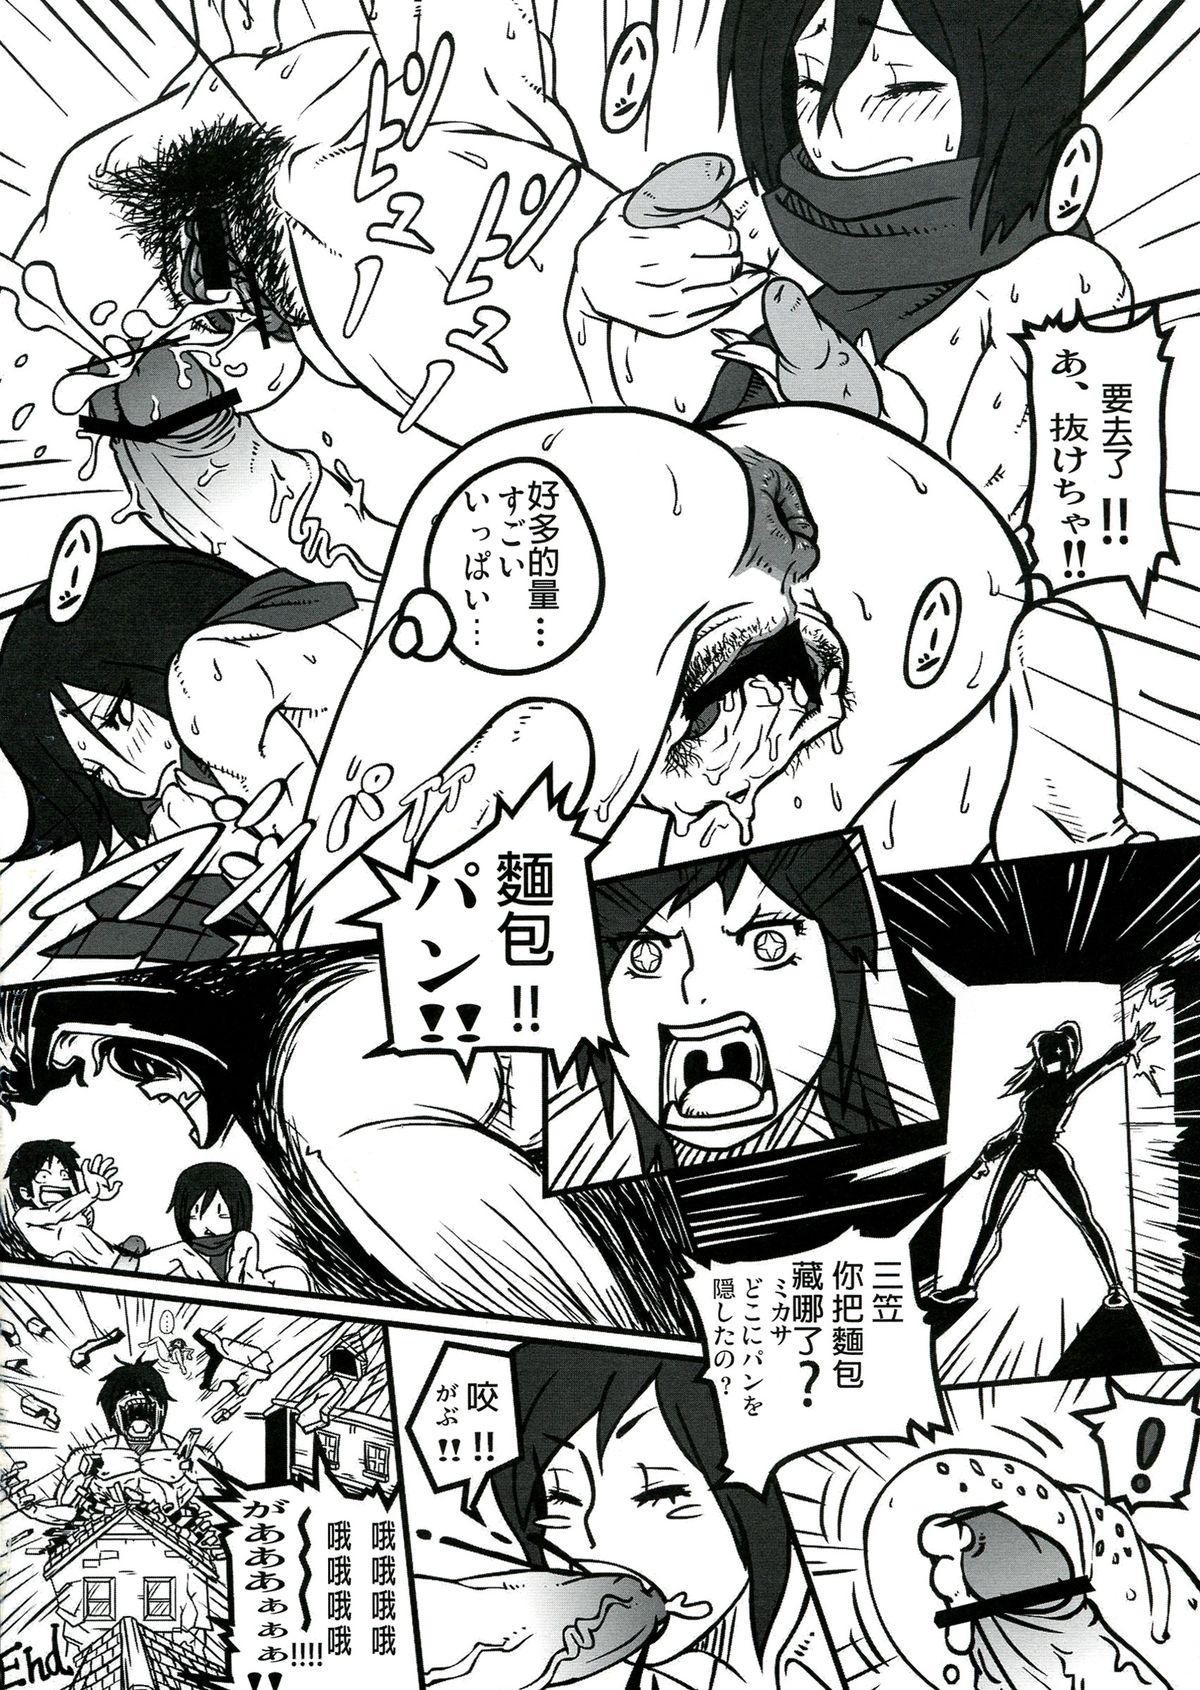 Women Shin Hanzuuryouku 27 - Neon genesis evangelion Shingeki no kyojin Urusei yatsura Space battleship yamato Negro - Page 48